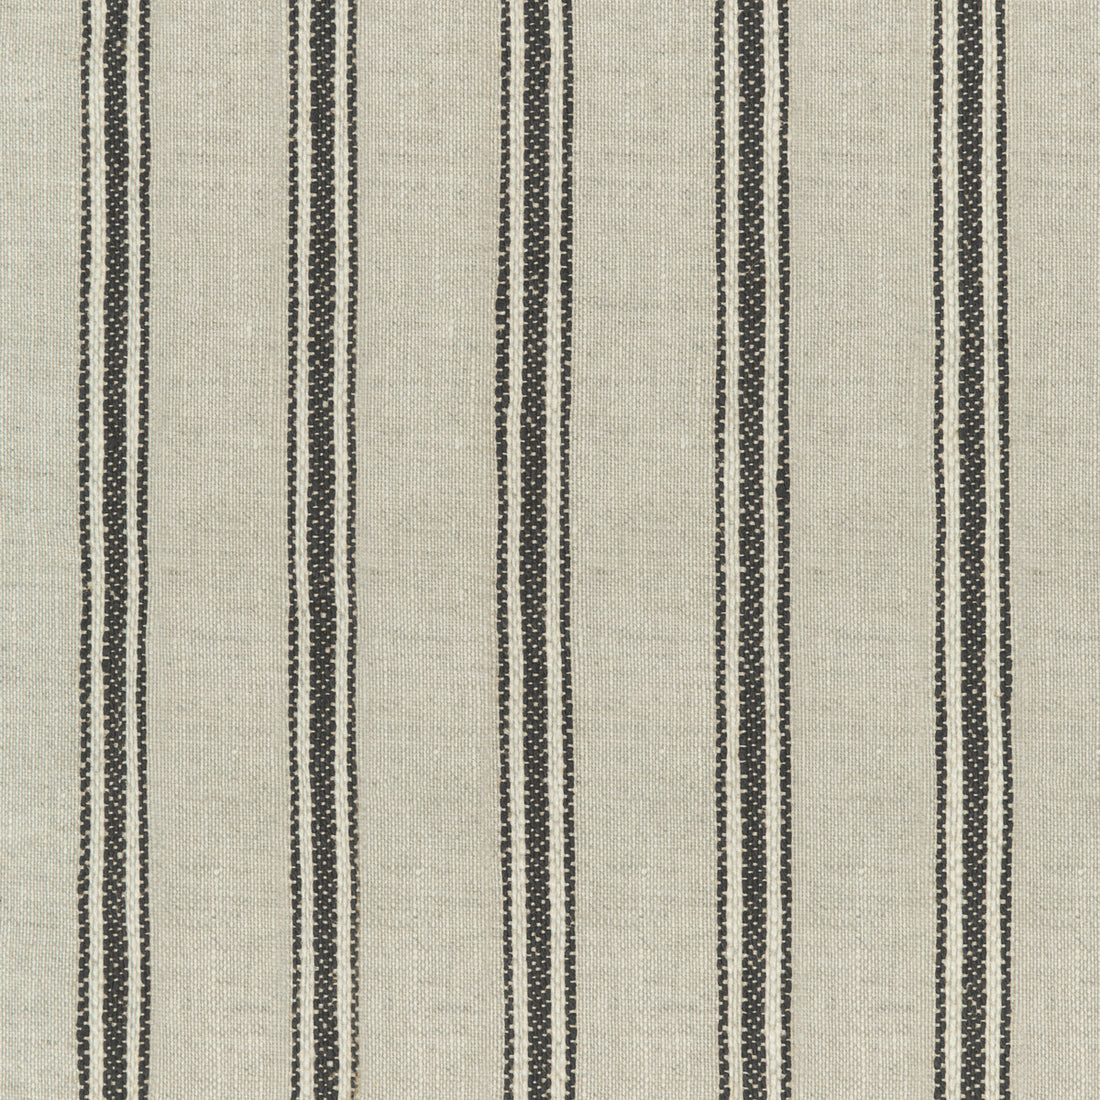 Kravet Design fabric in 4842-816 color - pattern 4842.816.0 - by Kravet Design